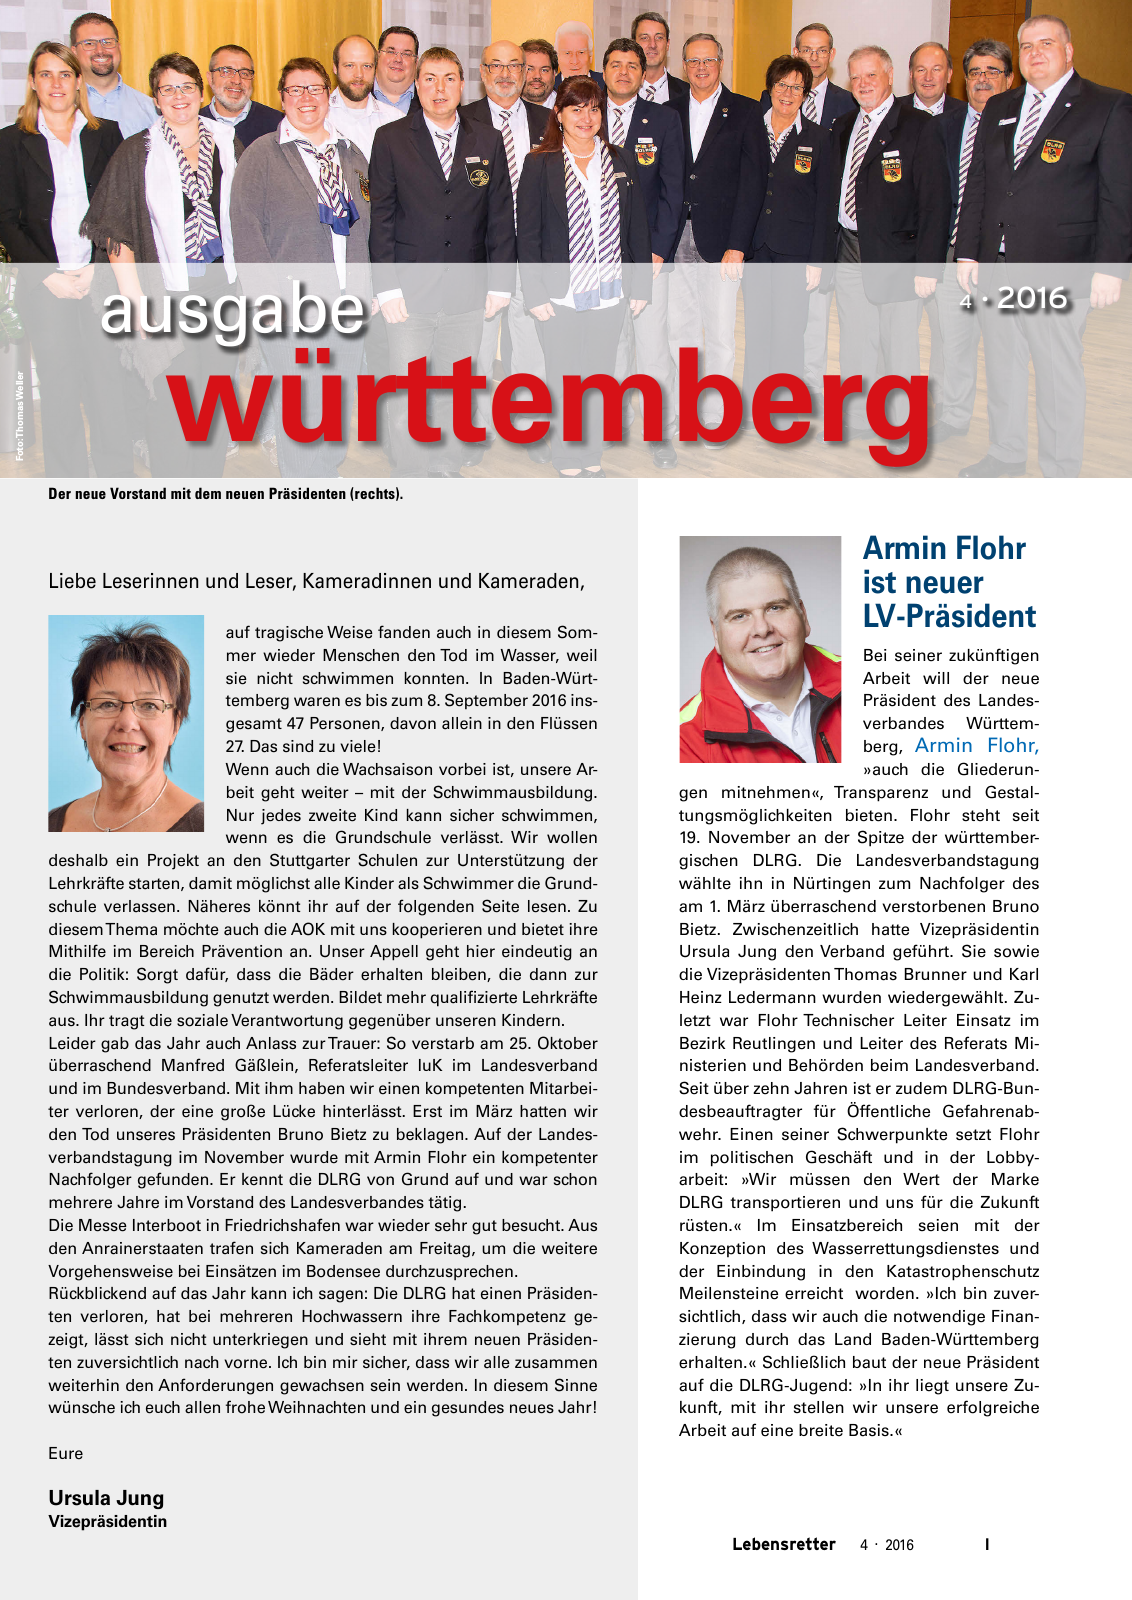 Vorschau Lebensretter 4/2016 - Regionalausgabe Württemberg Seite 3